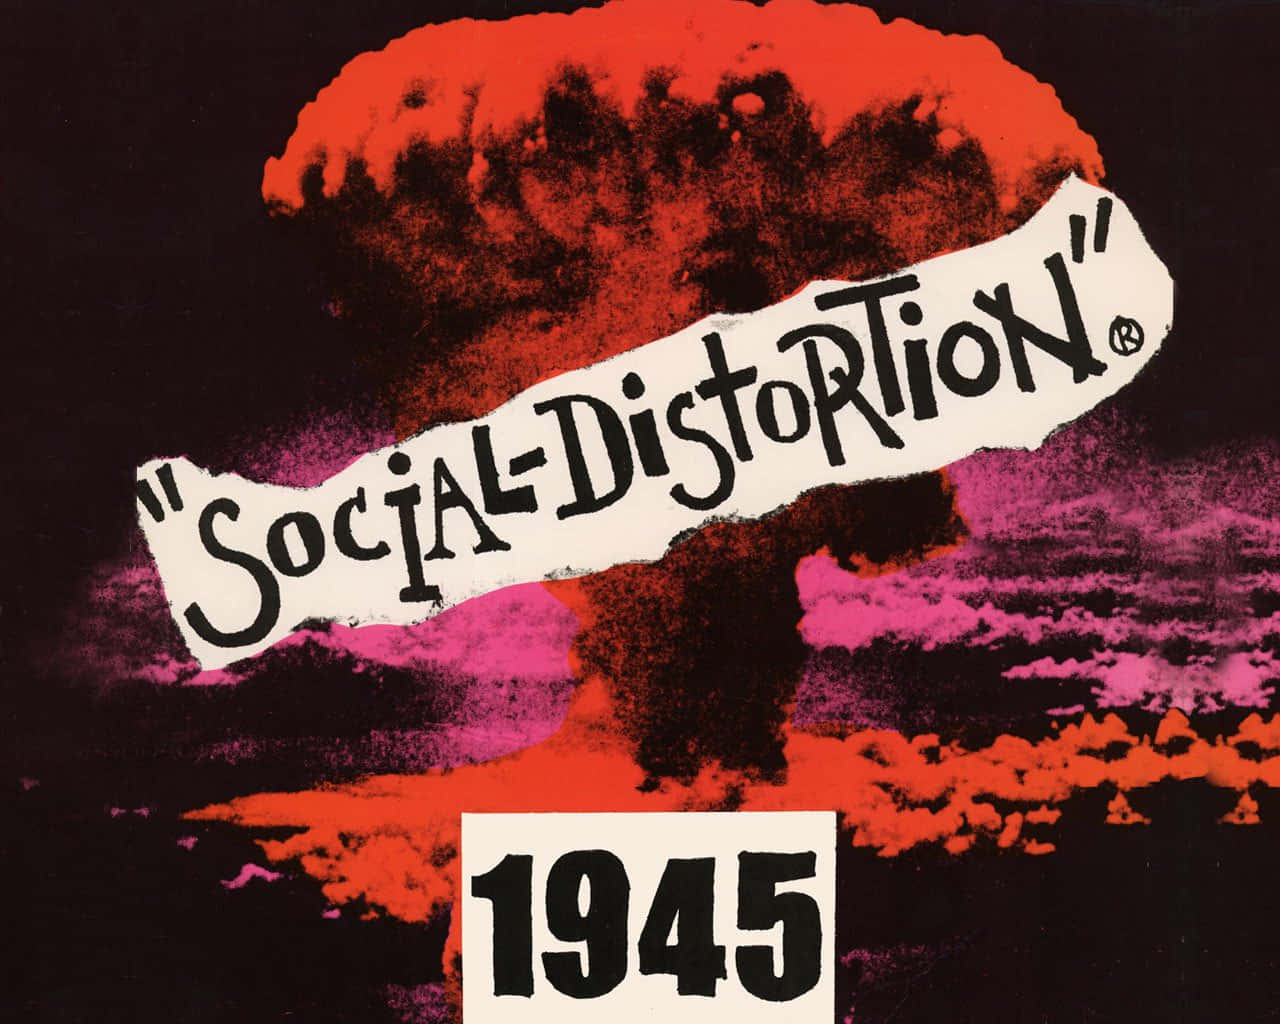 Social Distortion 1945 Covert Art Wallpaper